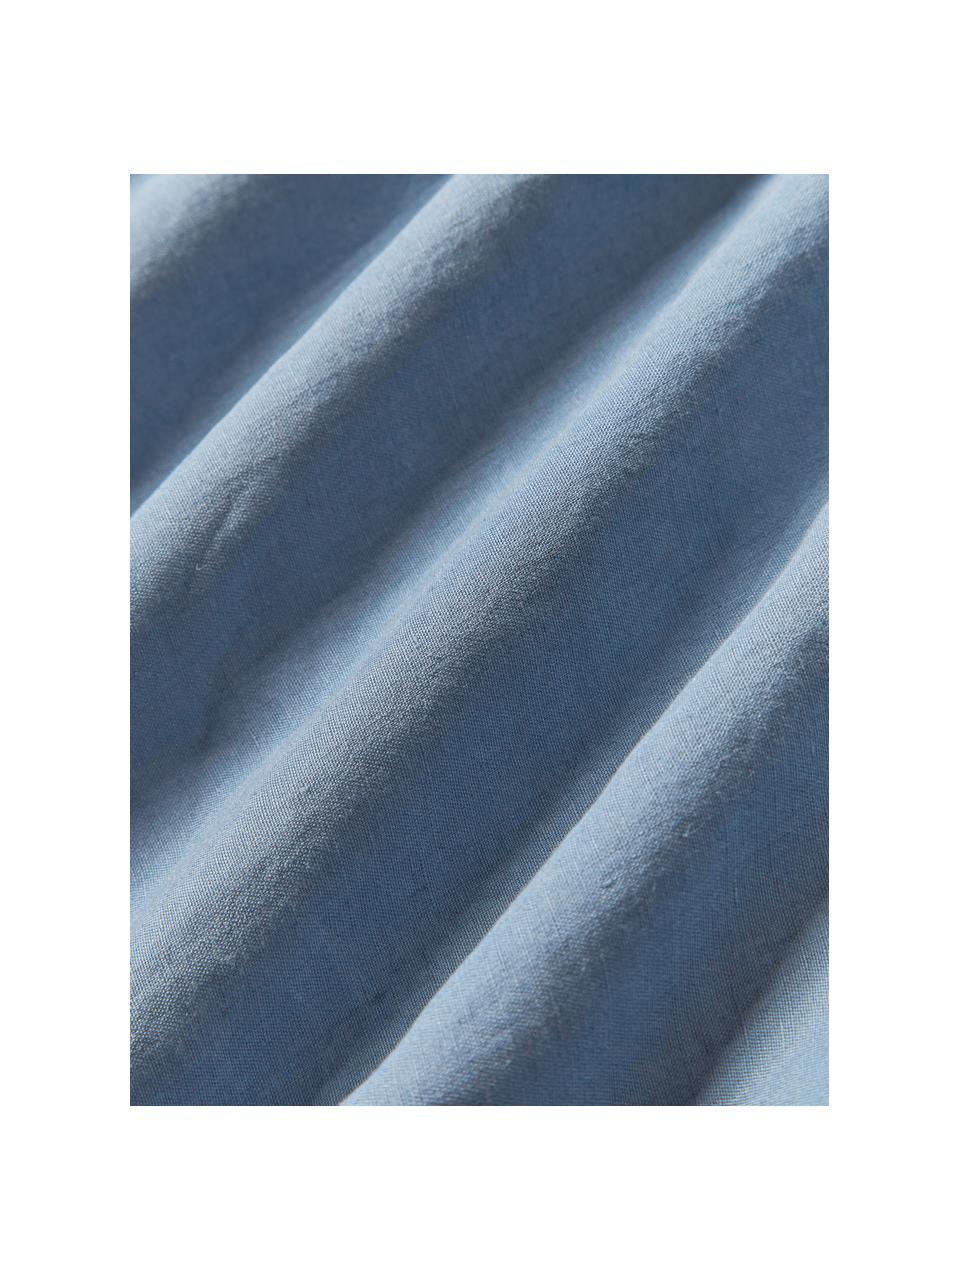 Ľanová posteľná plachta s vypraným vzhľadom Airy, 100 % ľan, certifikát European Flax
Hustota vlákna 165 TC, kvalita štandard

Ľan je prírodné vlákno vyznačujúce sa priedušnosťou, odolnosťou a mäkkosťou. Ľan je chladivý a savý materiál, ktorý rýchlo absorbuje a odvádza vlhkosť, vďaka čomu je ideálny do vysokých teplôt.

Materiál použitý v tomto výrobku bol testovaný na škodlivé látky a certifikovaný podľa STANDARD 100 by OEKO-TEX®, 137, CITEVE., Modrá, Š 240 x D 280 cm